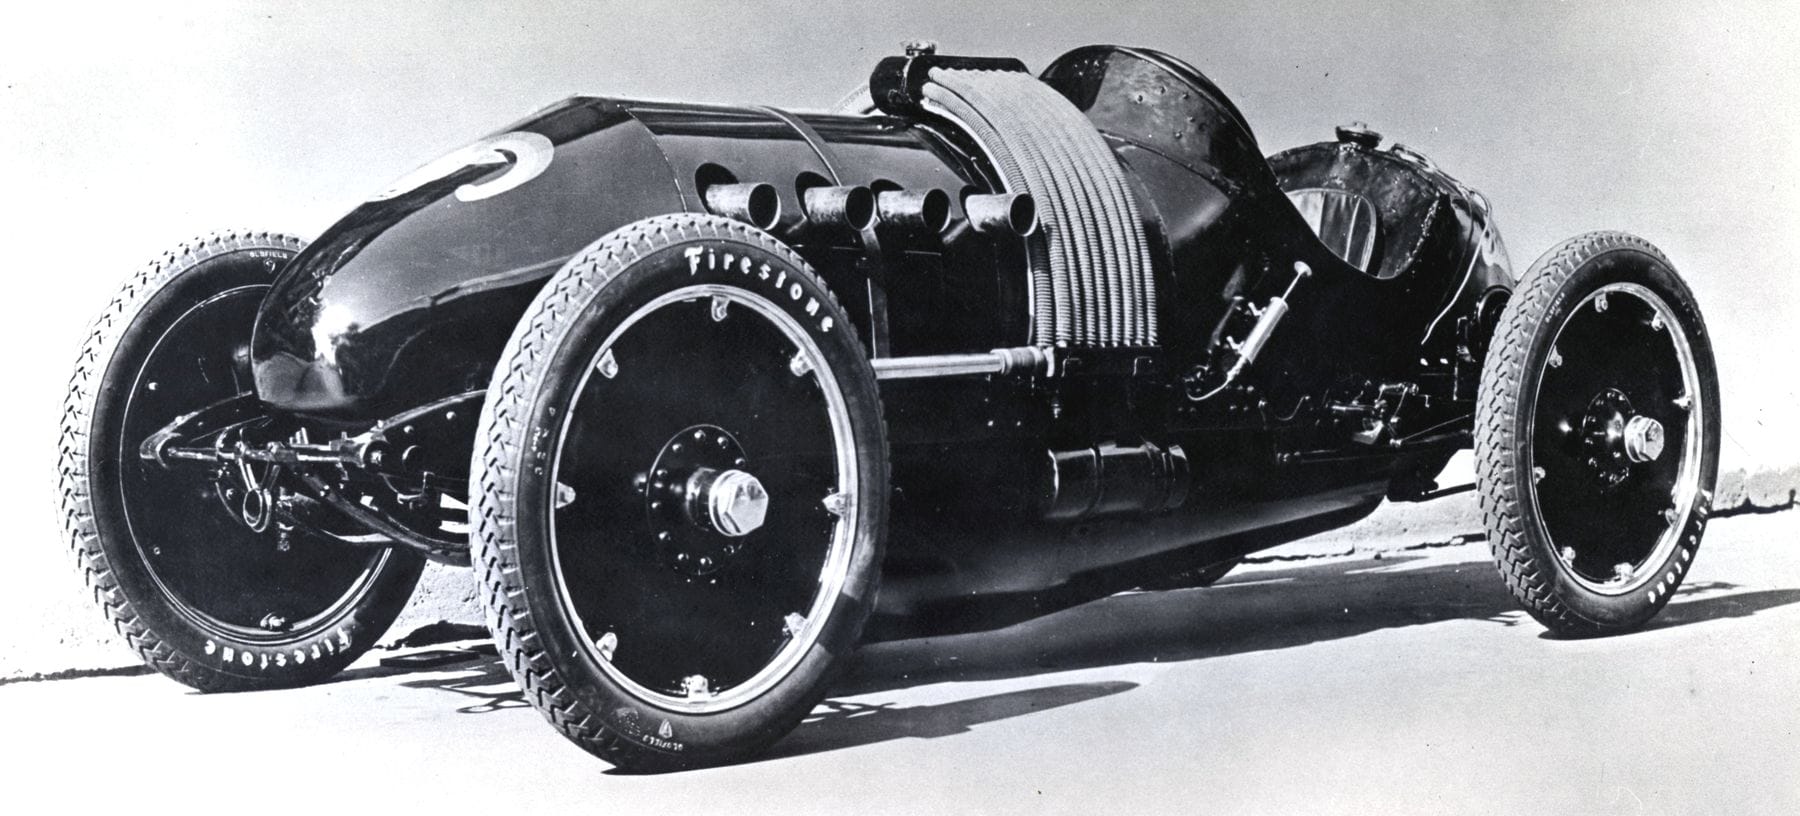 Ein Ur-Vater der Muscle Cars: Der Buick "The 60 Special" aus dem Jahr 1910 mit einem 10.2-Liter-Vierzylinder-Motor.